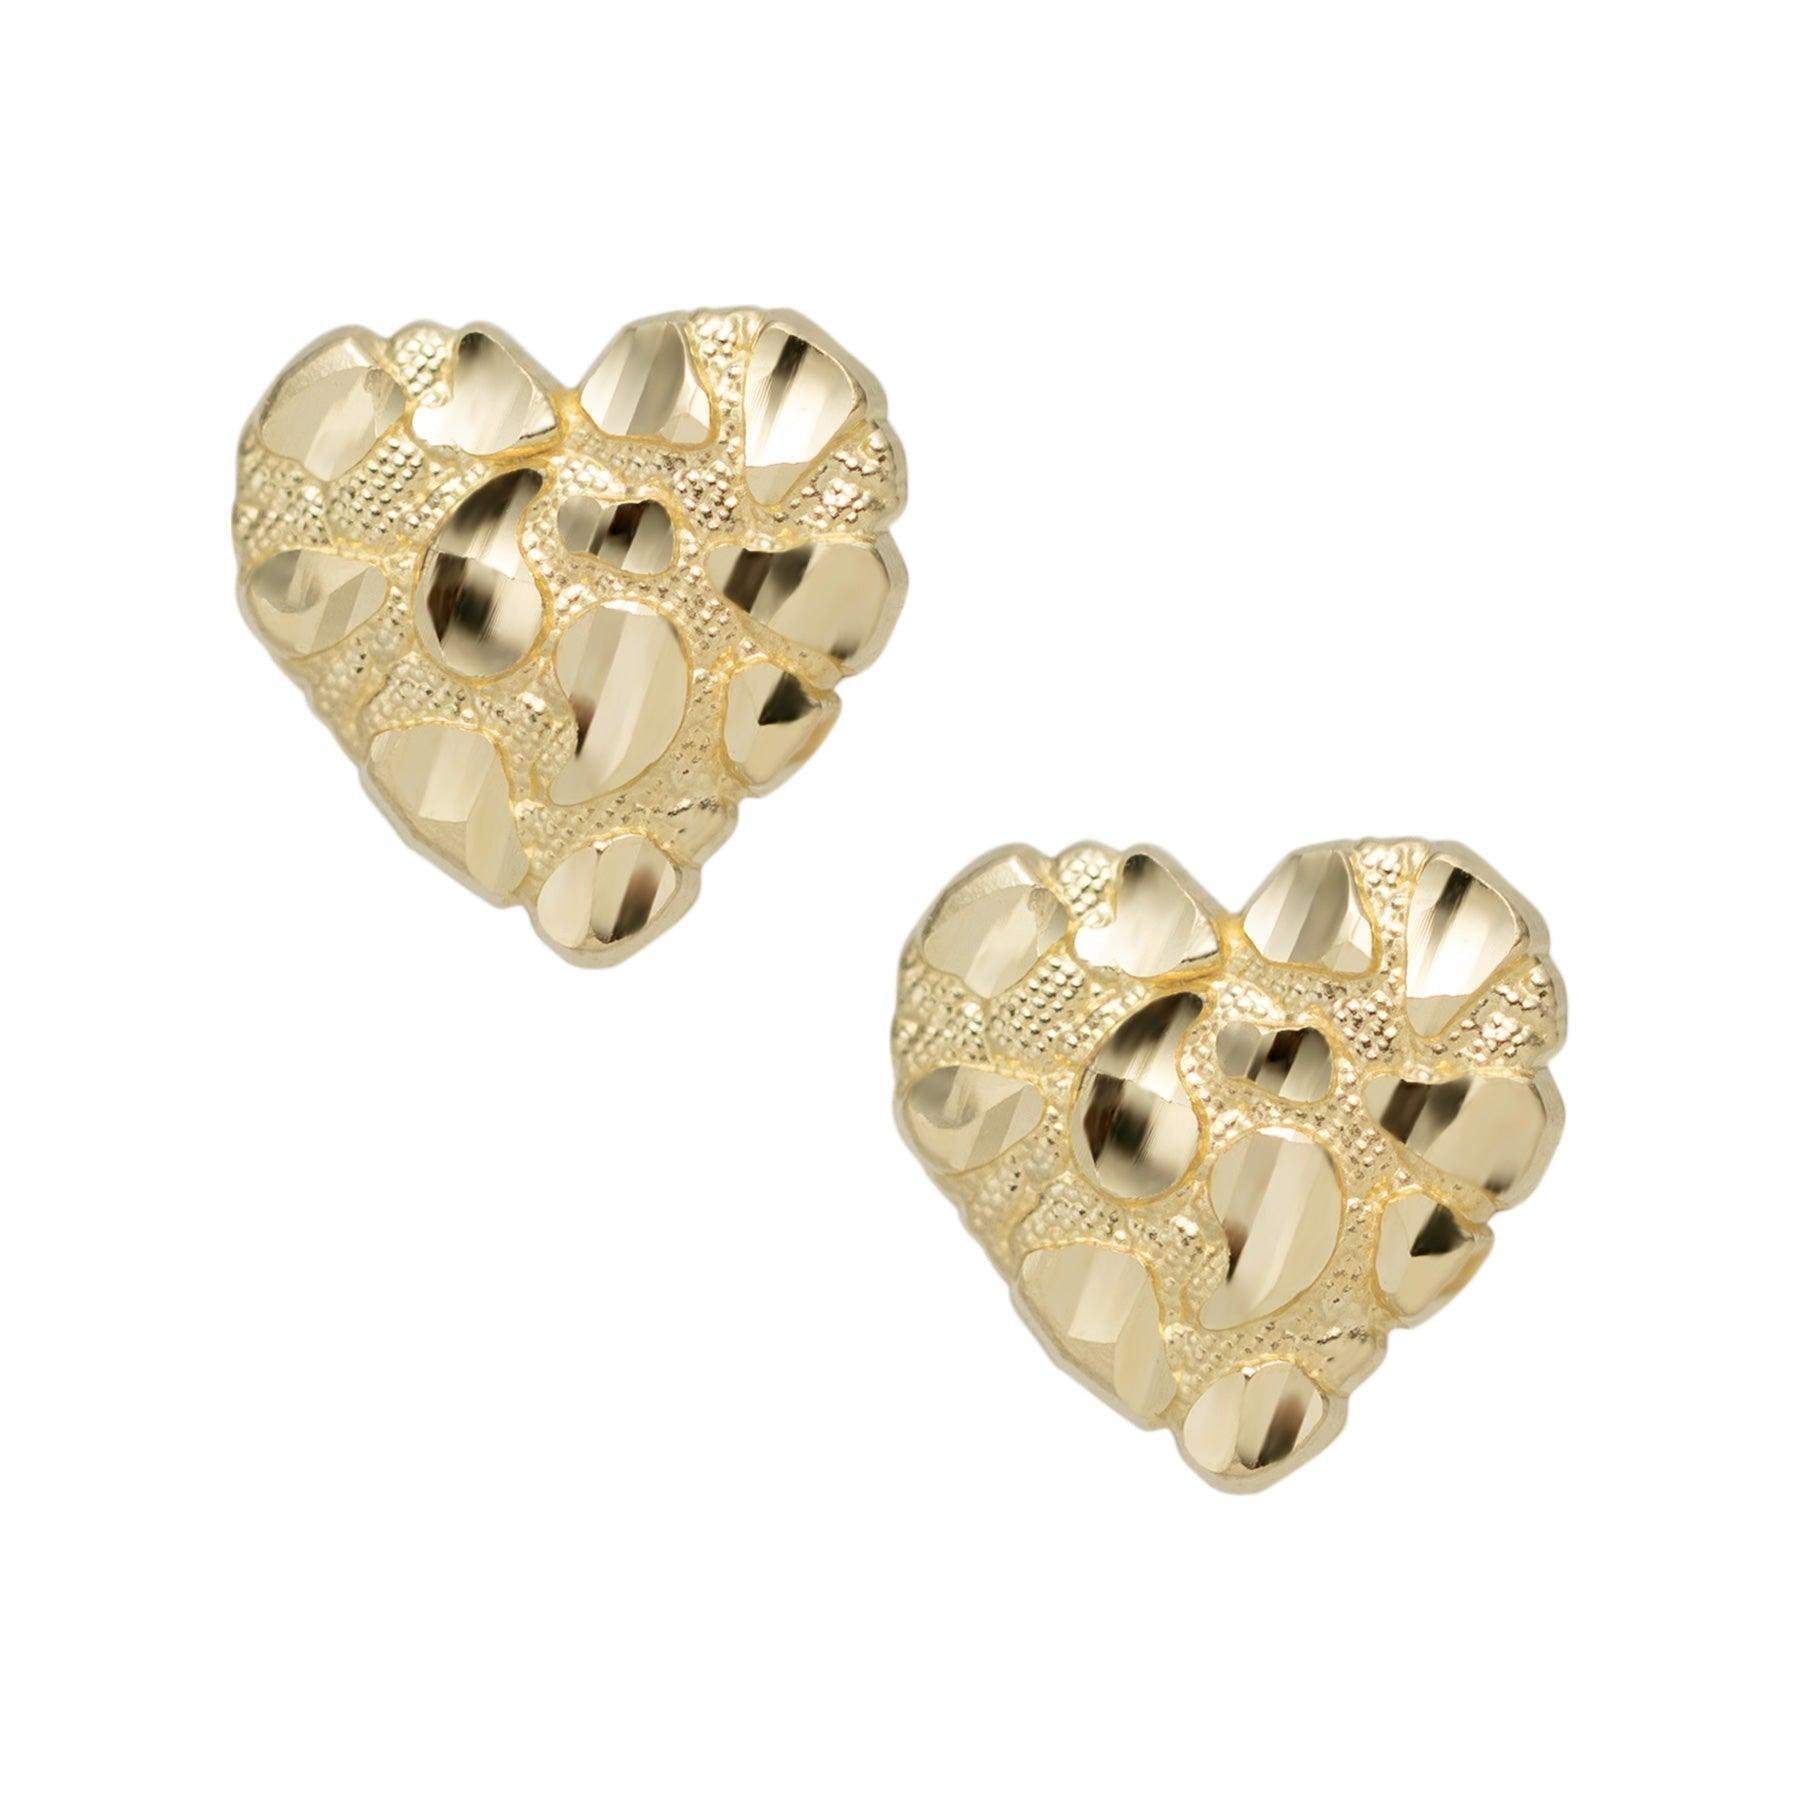 Solid 14K Yellow Gold Heart Earrings